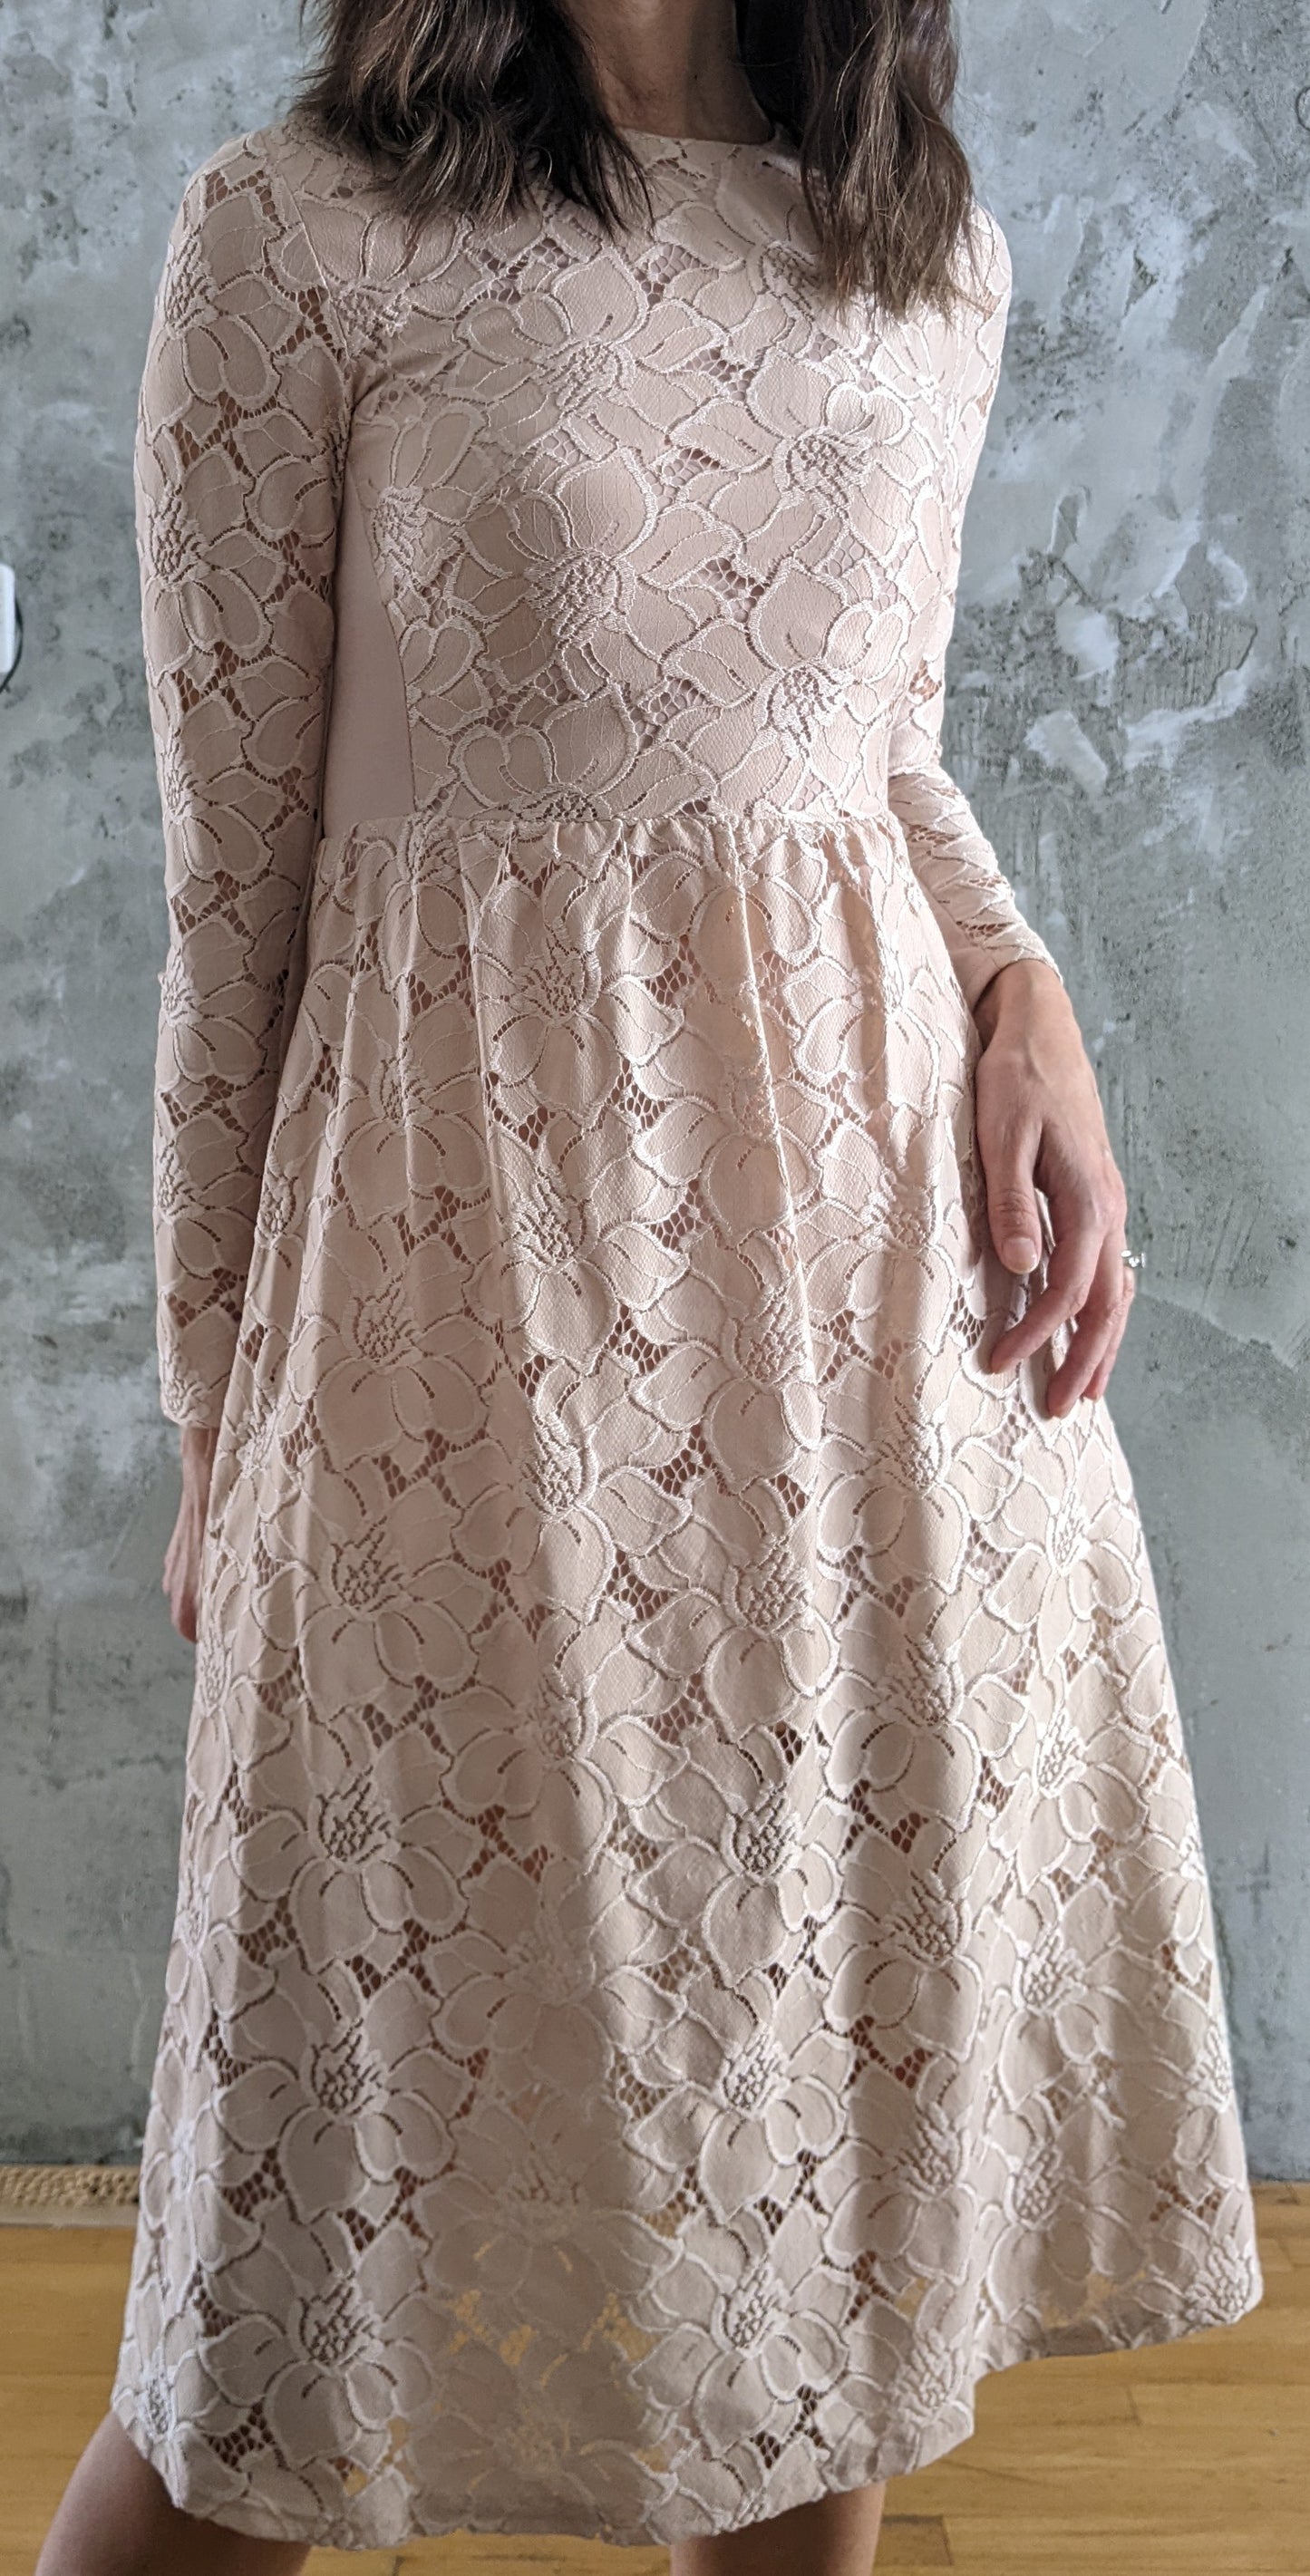 H&M long sleeve lace dress size XS.